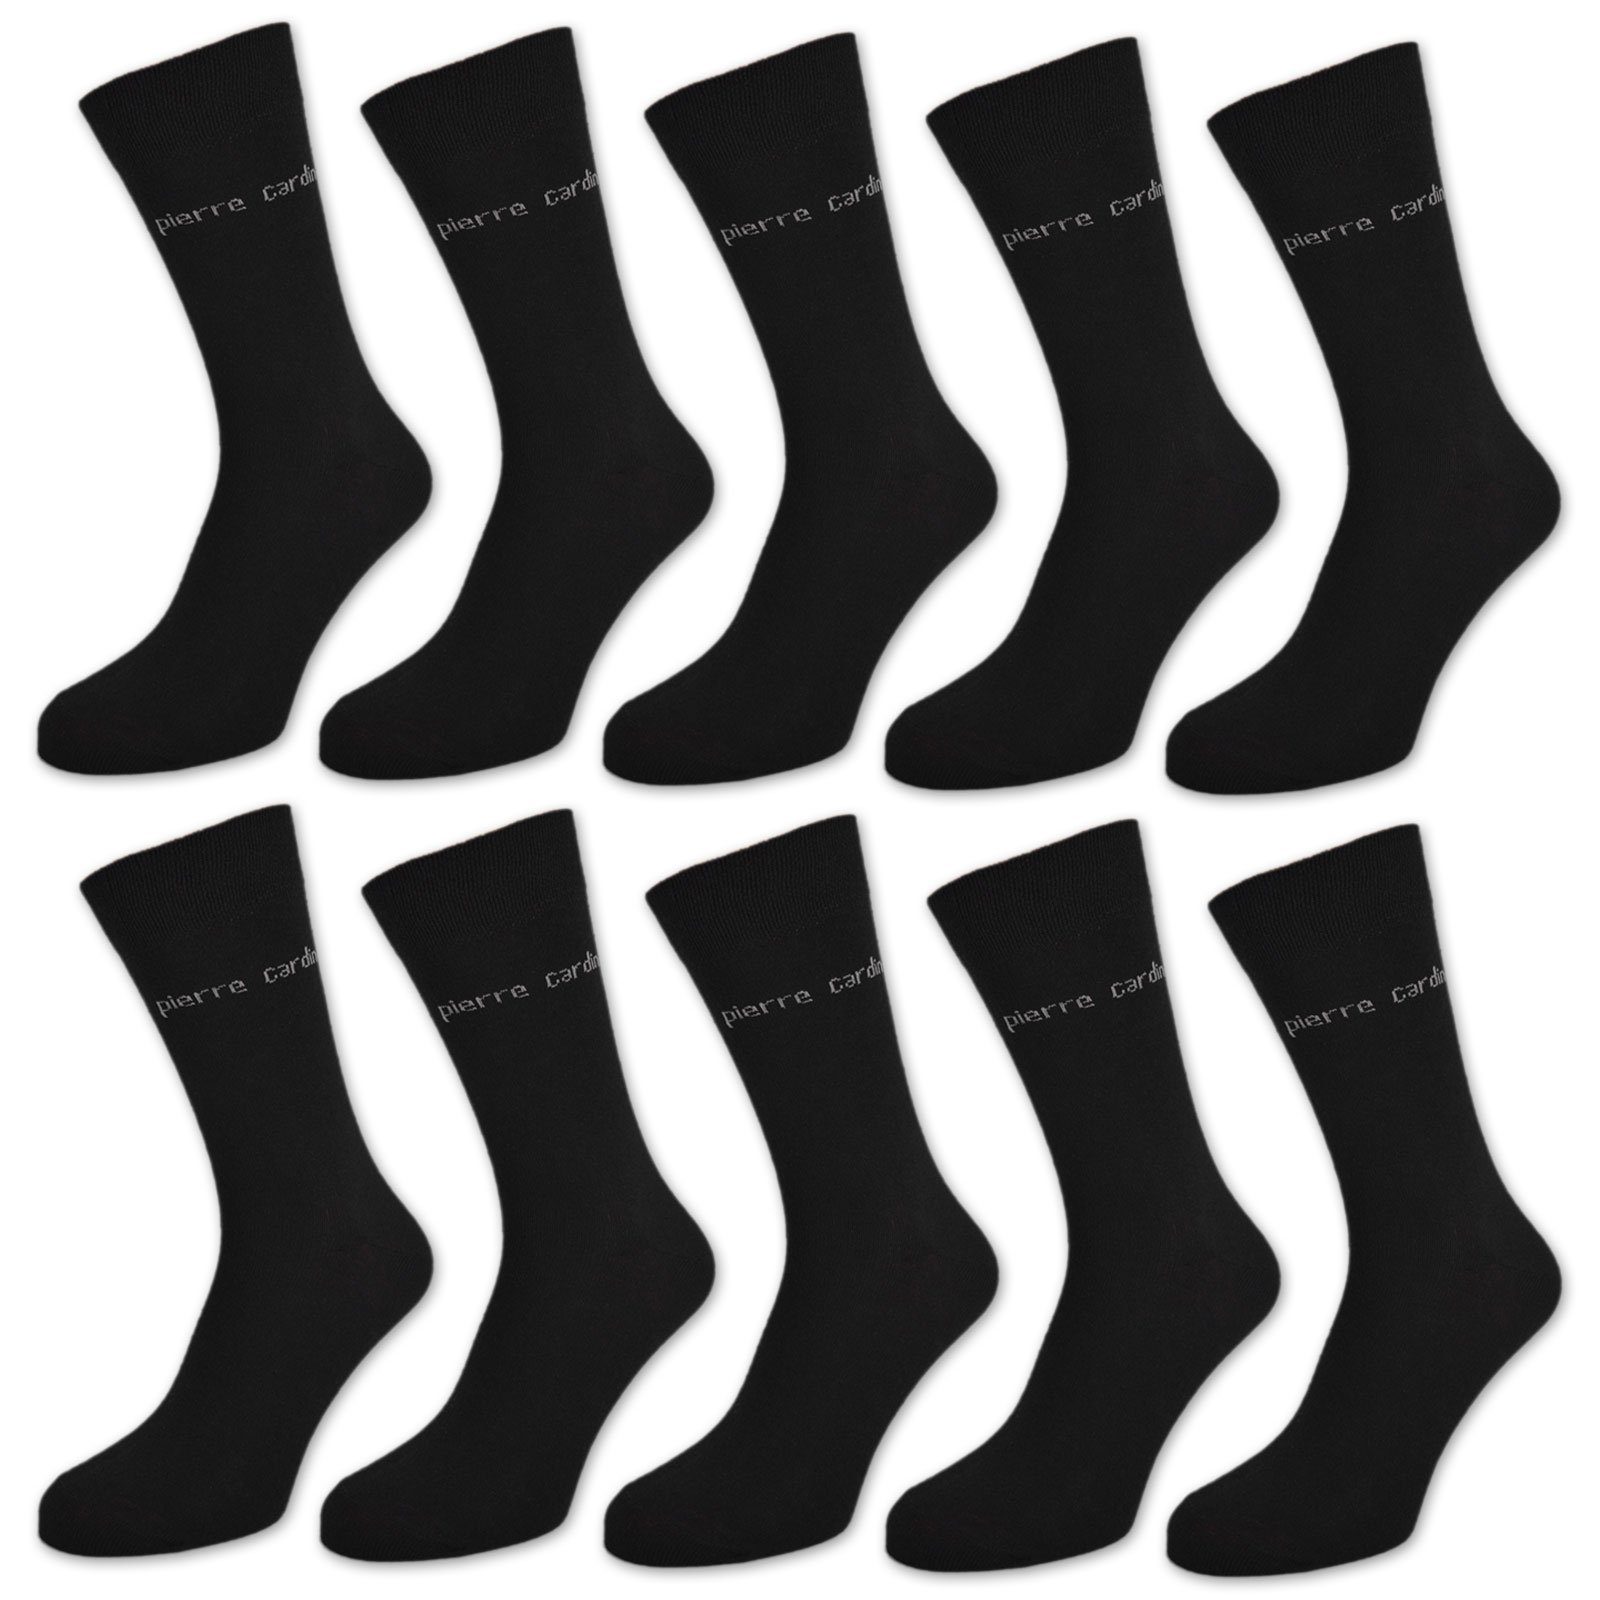 sockenkauf24 Basicsocken »10 Paar Pierre Cardin Socken Herren Schwarz  Baumwolle Business Herrensocken 13300« (10-Paar, 39-42) online kaufen | OTTO